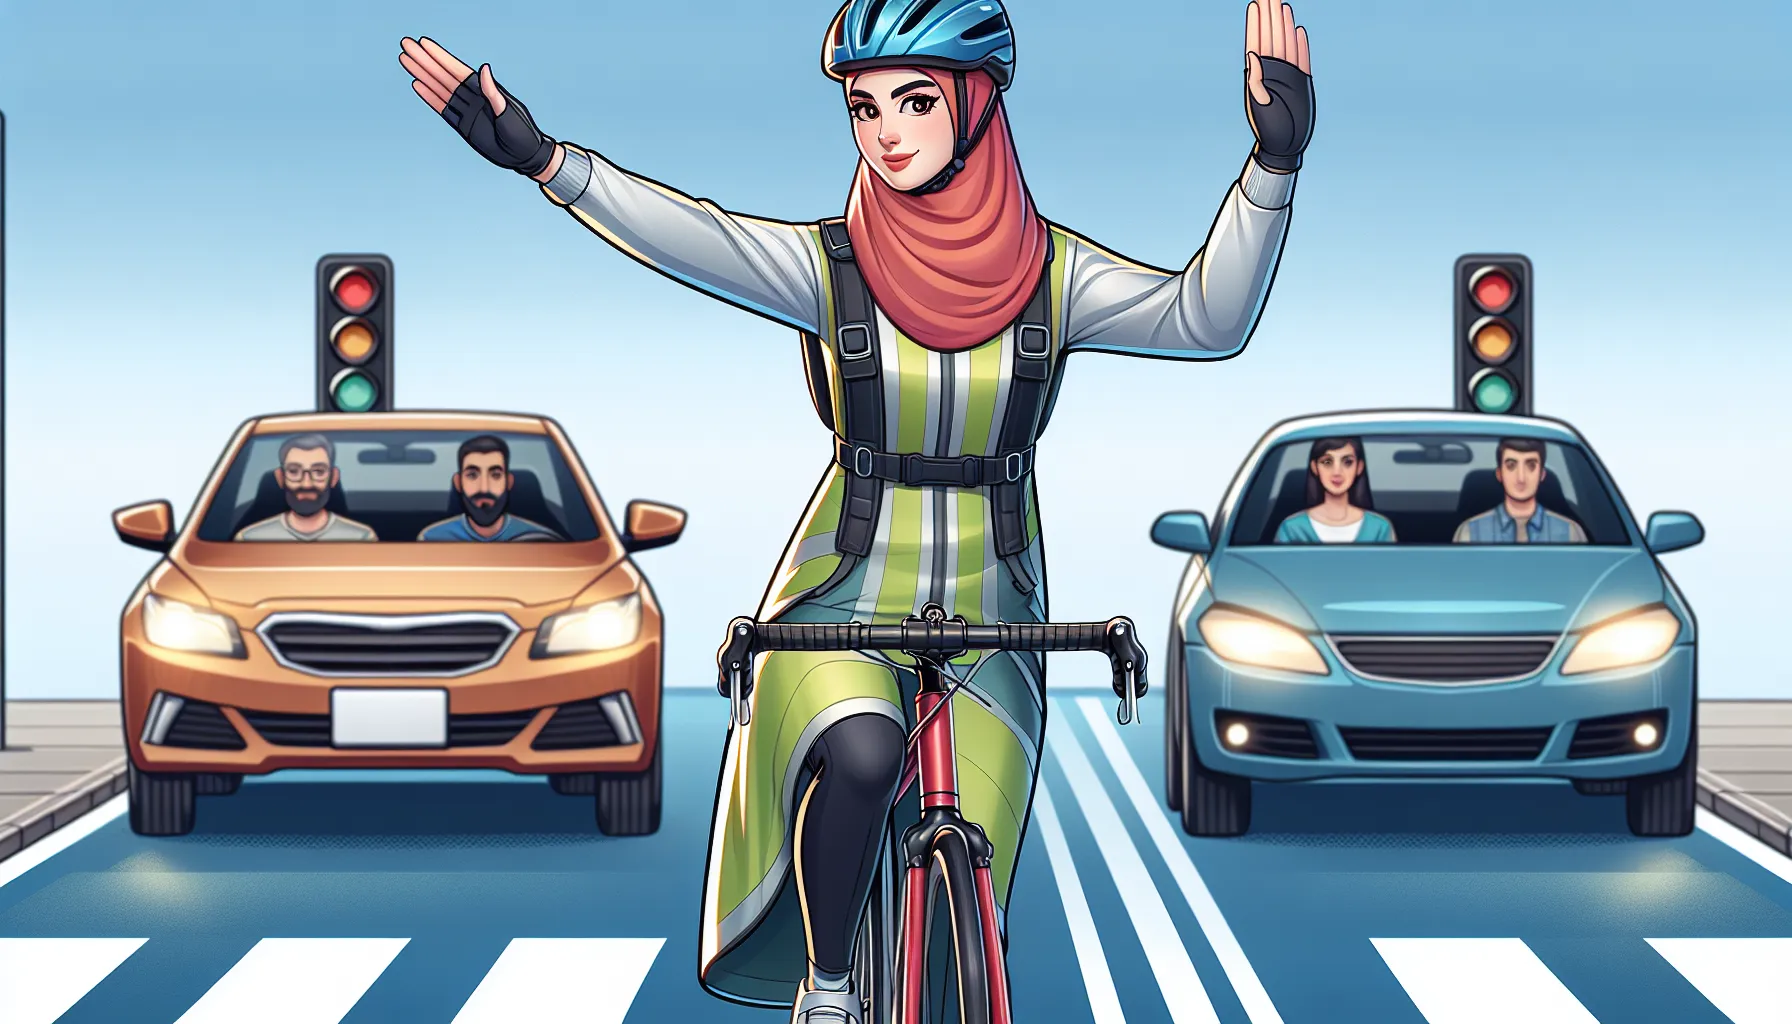 Ciclismo é uma ótima atividade para se exercitar e se deslocar pela cidade, mas é comum que ciclistas iniciantes tenham medo de andar no tráfego. Aqui estão algumas dicas para ajudá-lo a superar esse medo e se sentir mais confiante ao pedalar:

1. Escolha rotas seguras: Comece escolhendo rotas que tenham menos tráfego e sejam mais tranquil